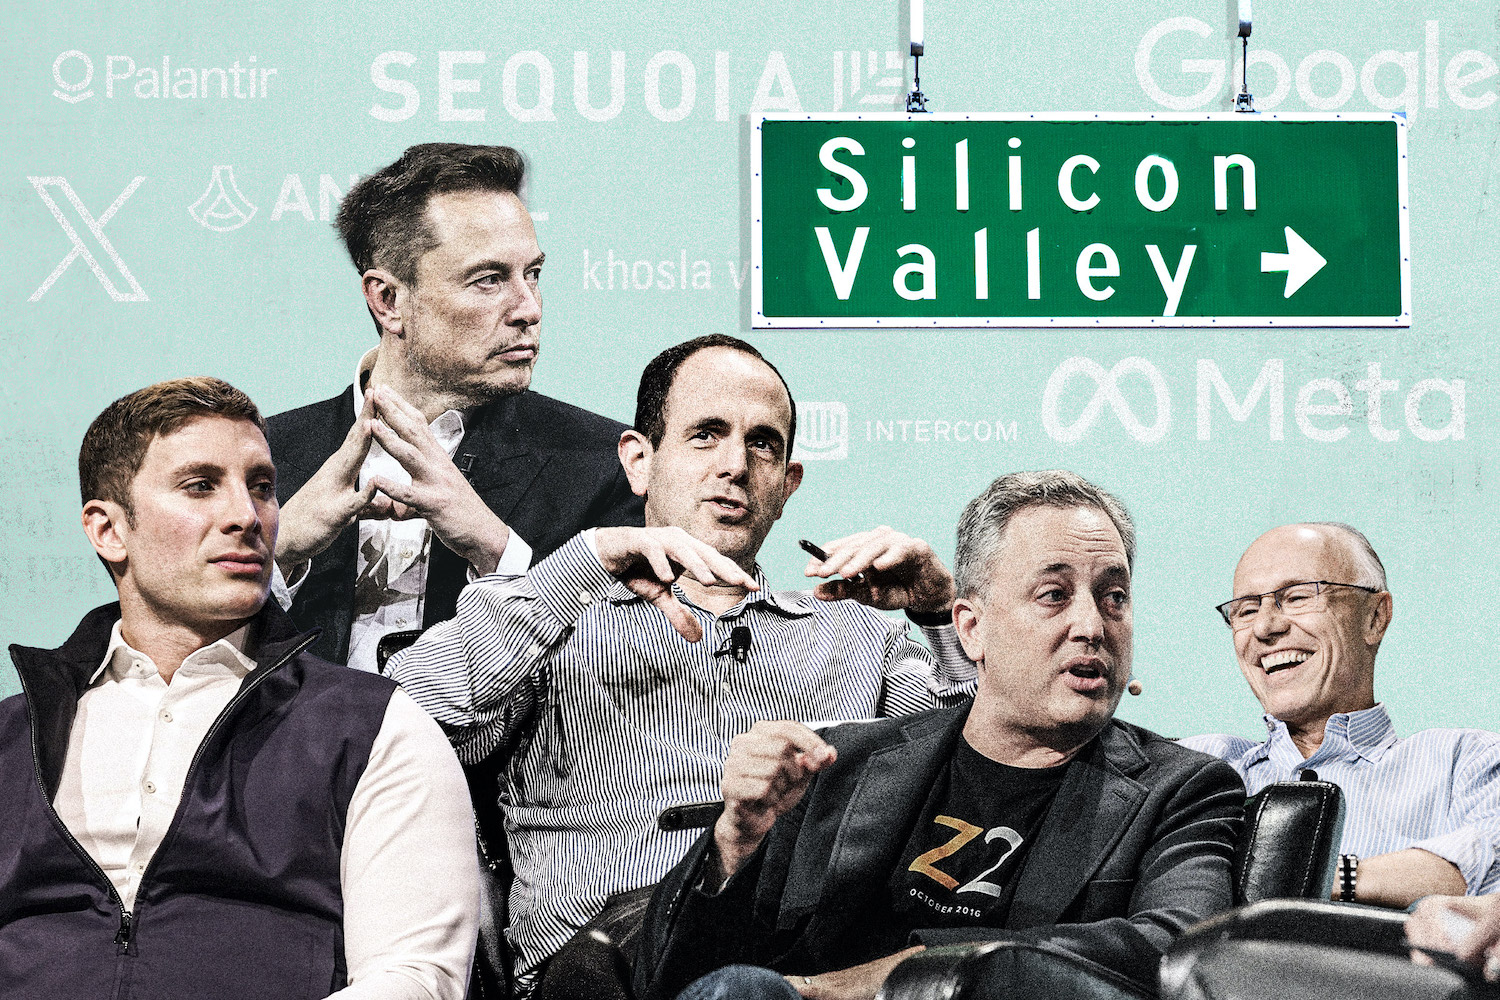 Un spécialiste de la technologie explique pourquoi certains acteurs de la Silicon Valley se tournent vers Donald Trump